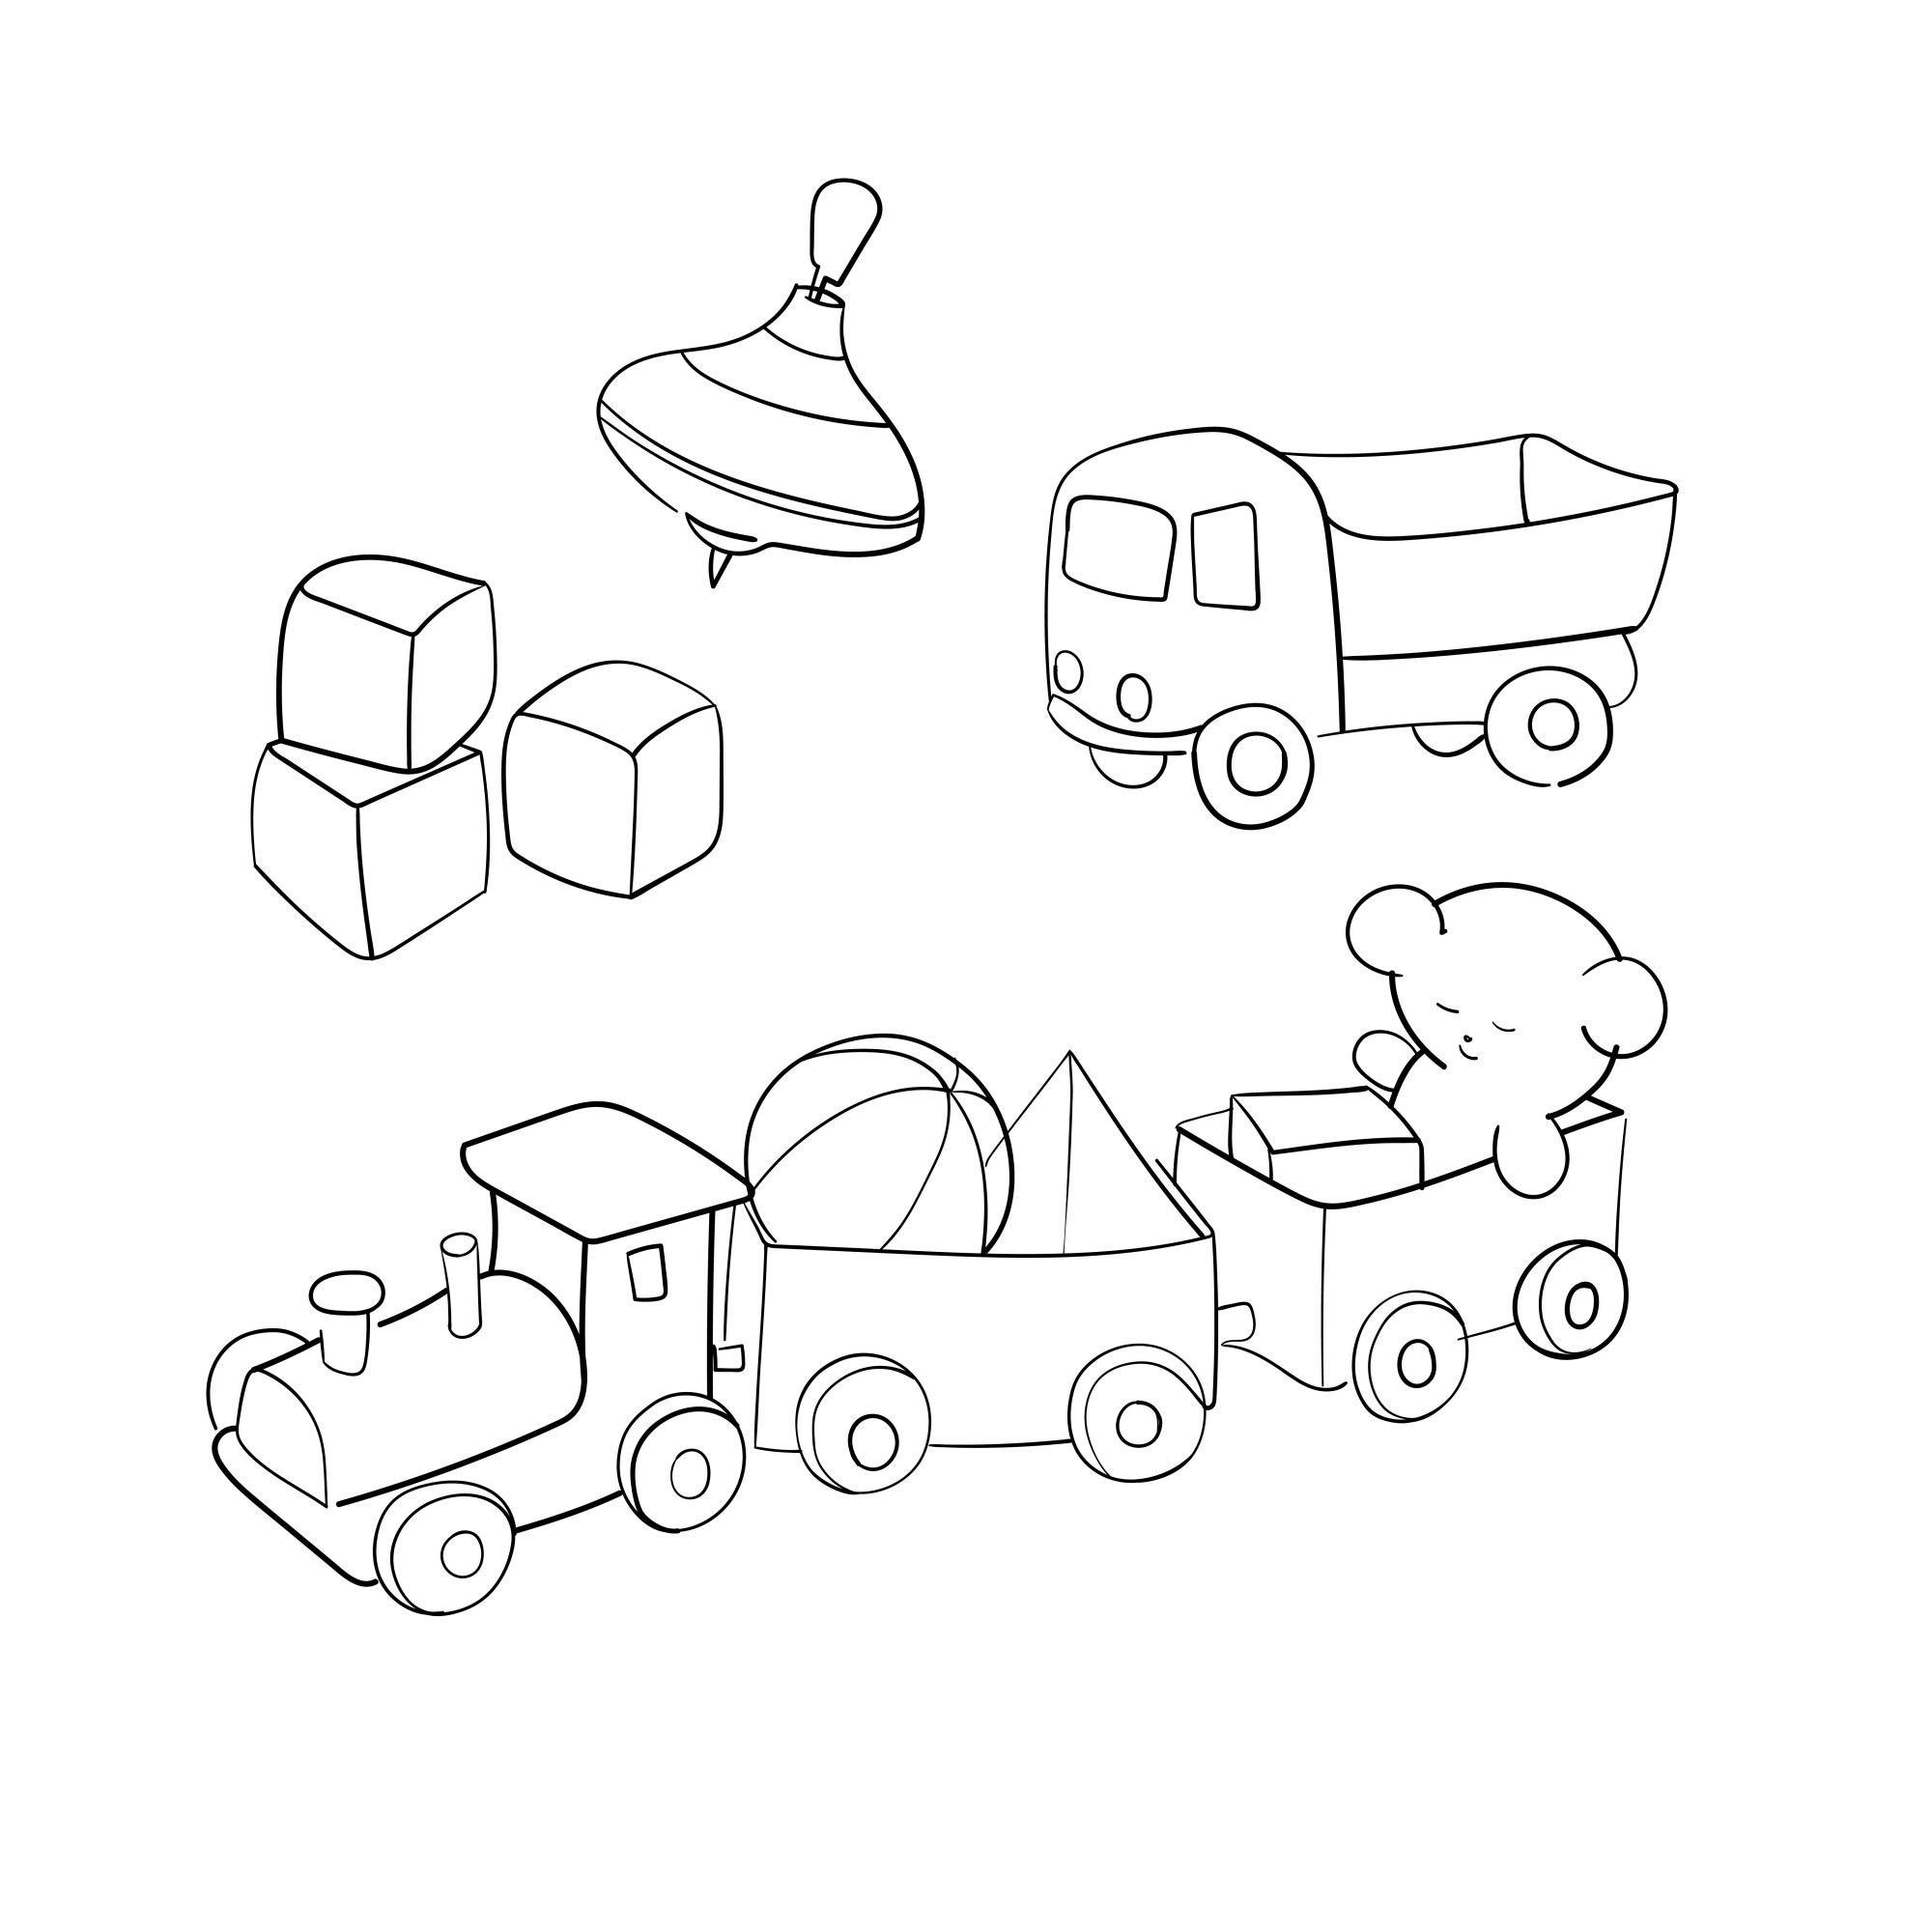 Раскраска для детей: игрушки для малышей: кубики, юла, грузовик и поезд с вагончиками